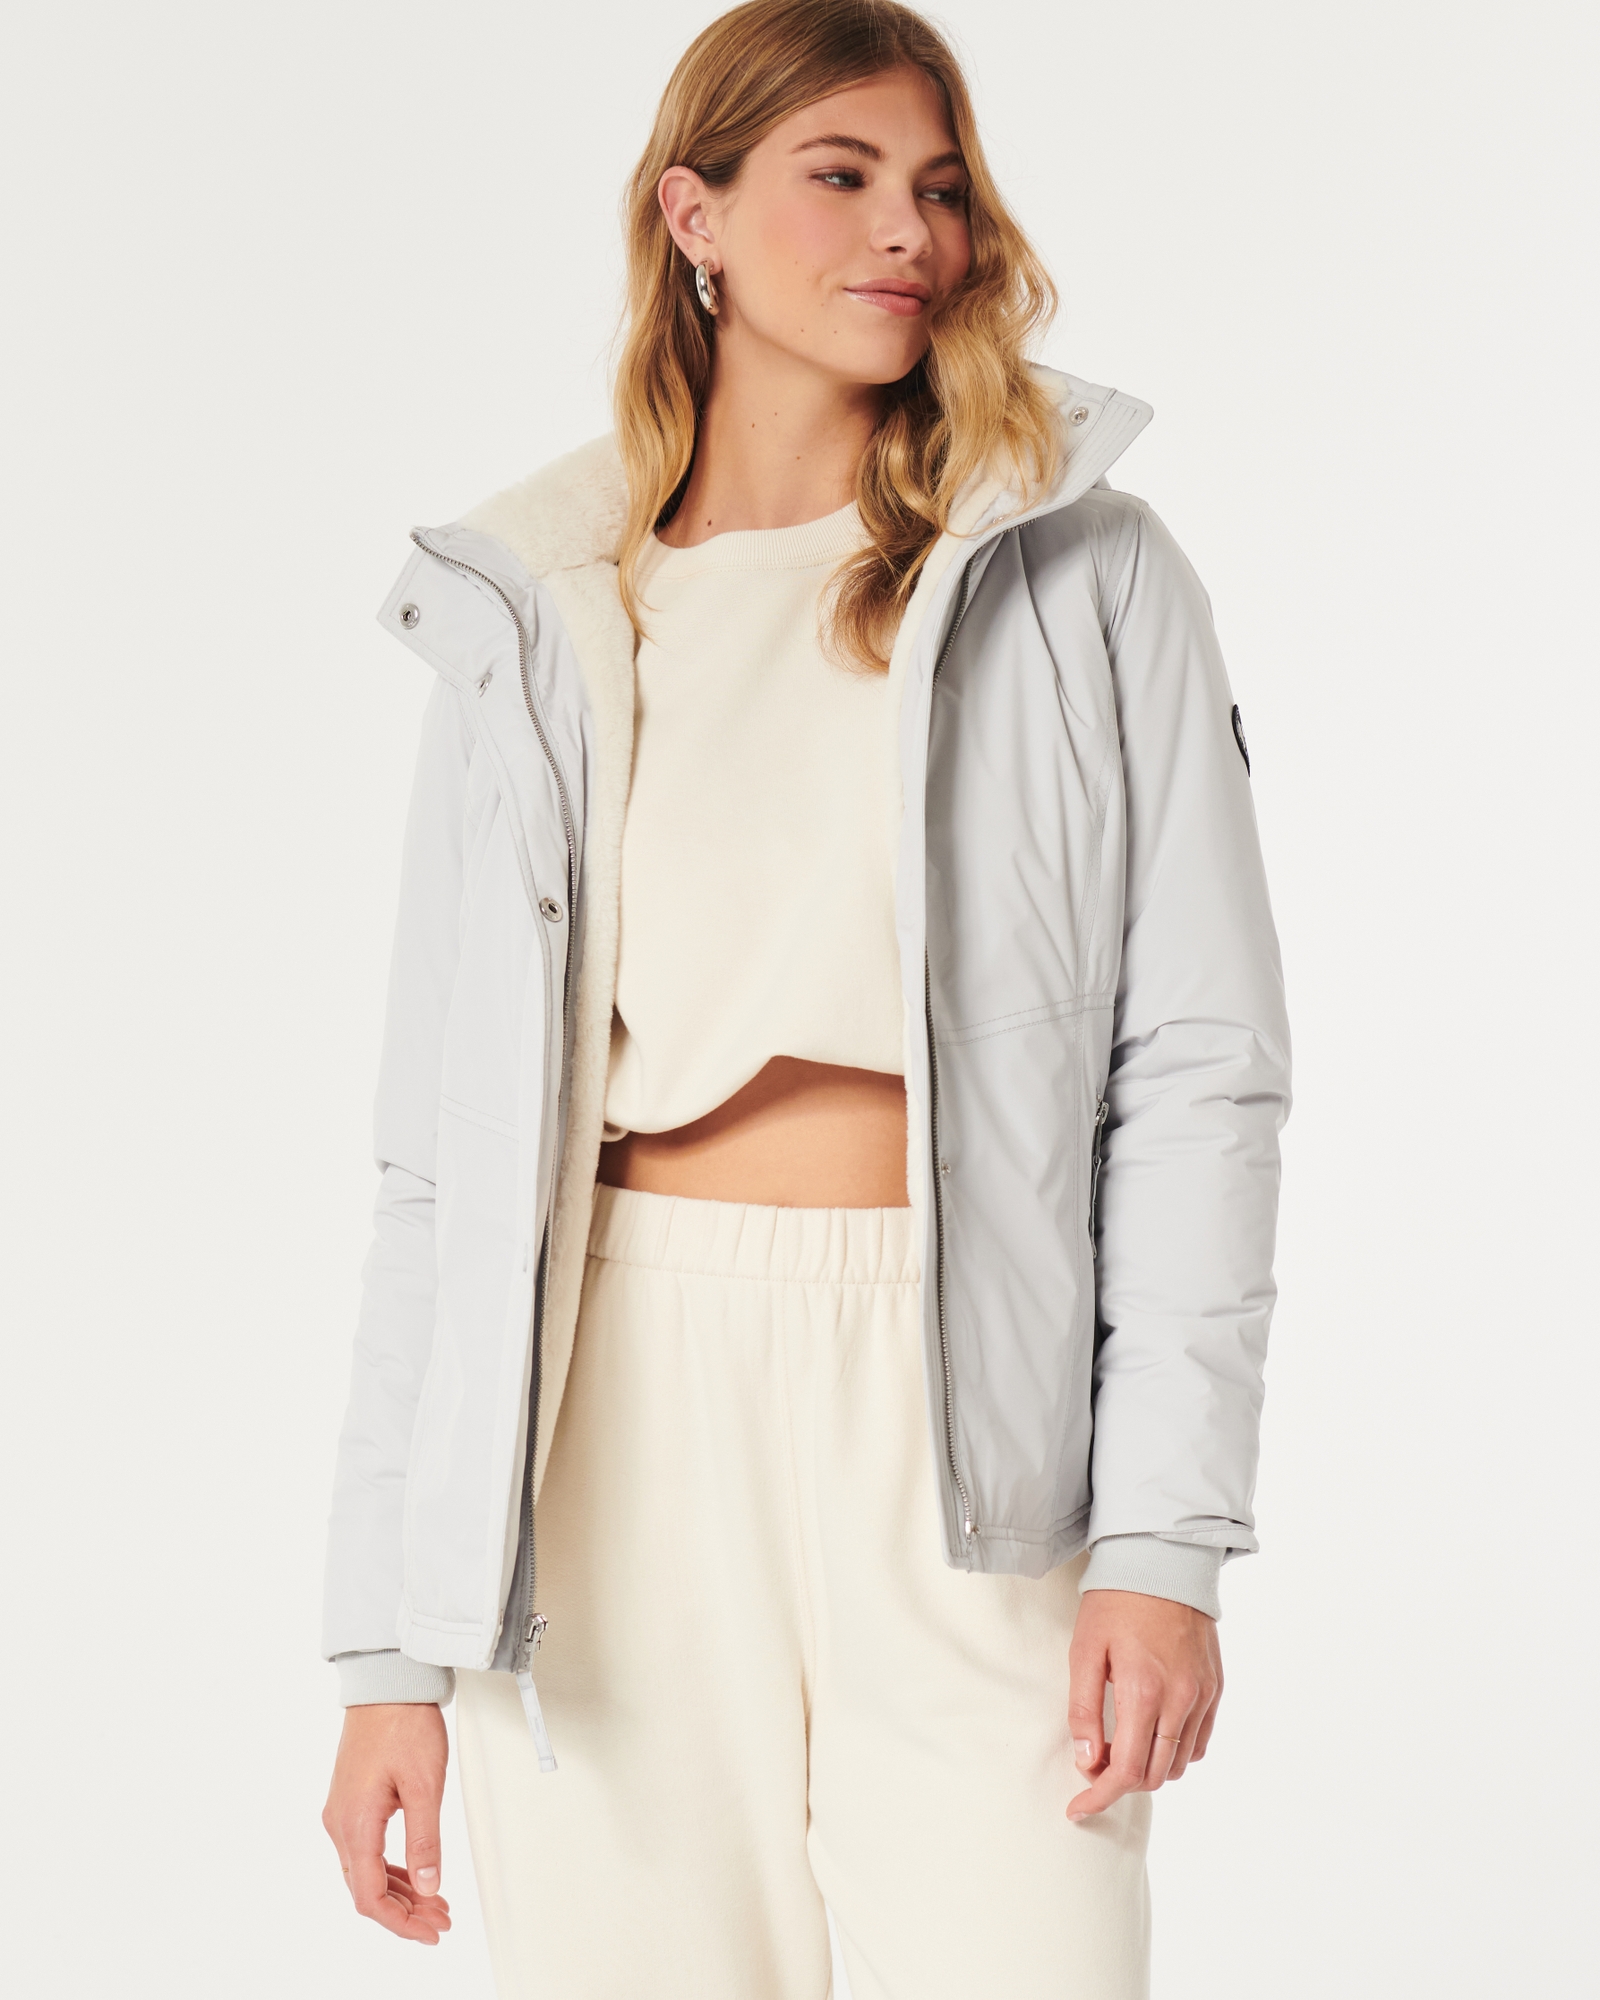 Women's All-Weather Faux Fur-Lined Jacket, Women's Sale